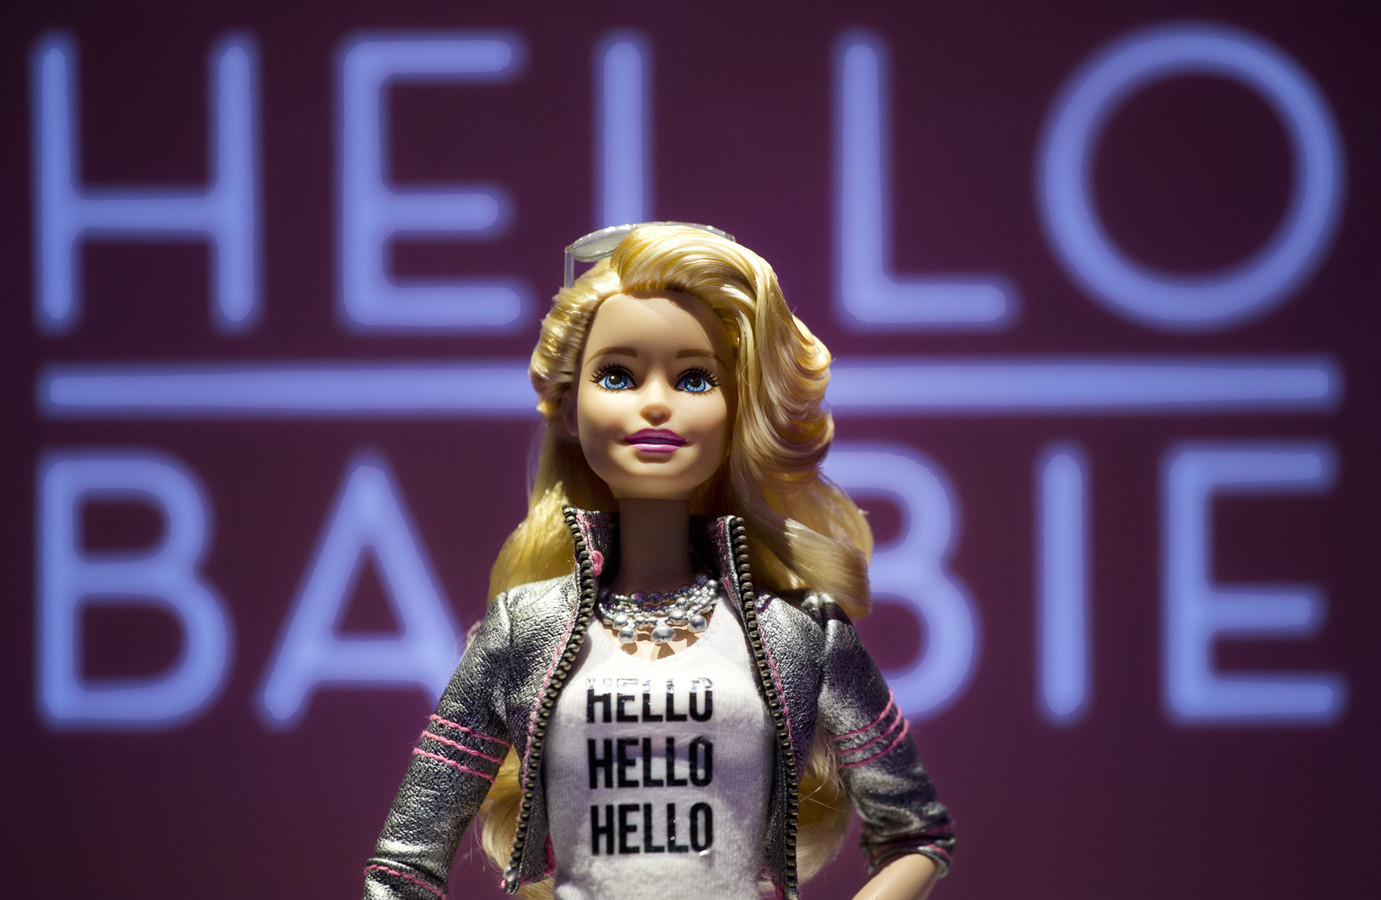 Wedstrijd drinken twaalf Moet pratende barbiepop de redding van Mattel worden? | Foto | AD.nl